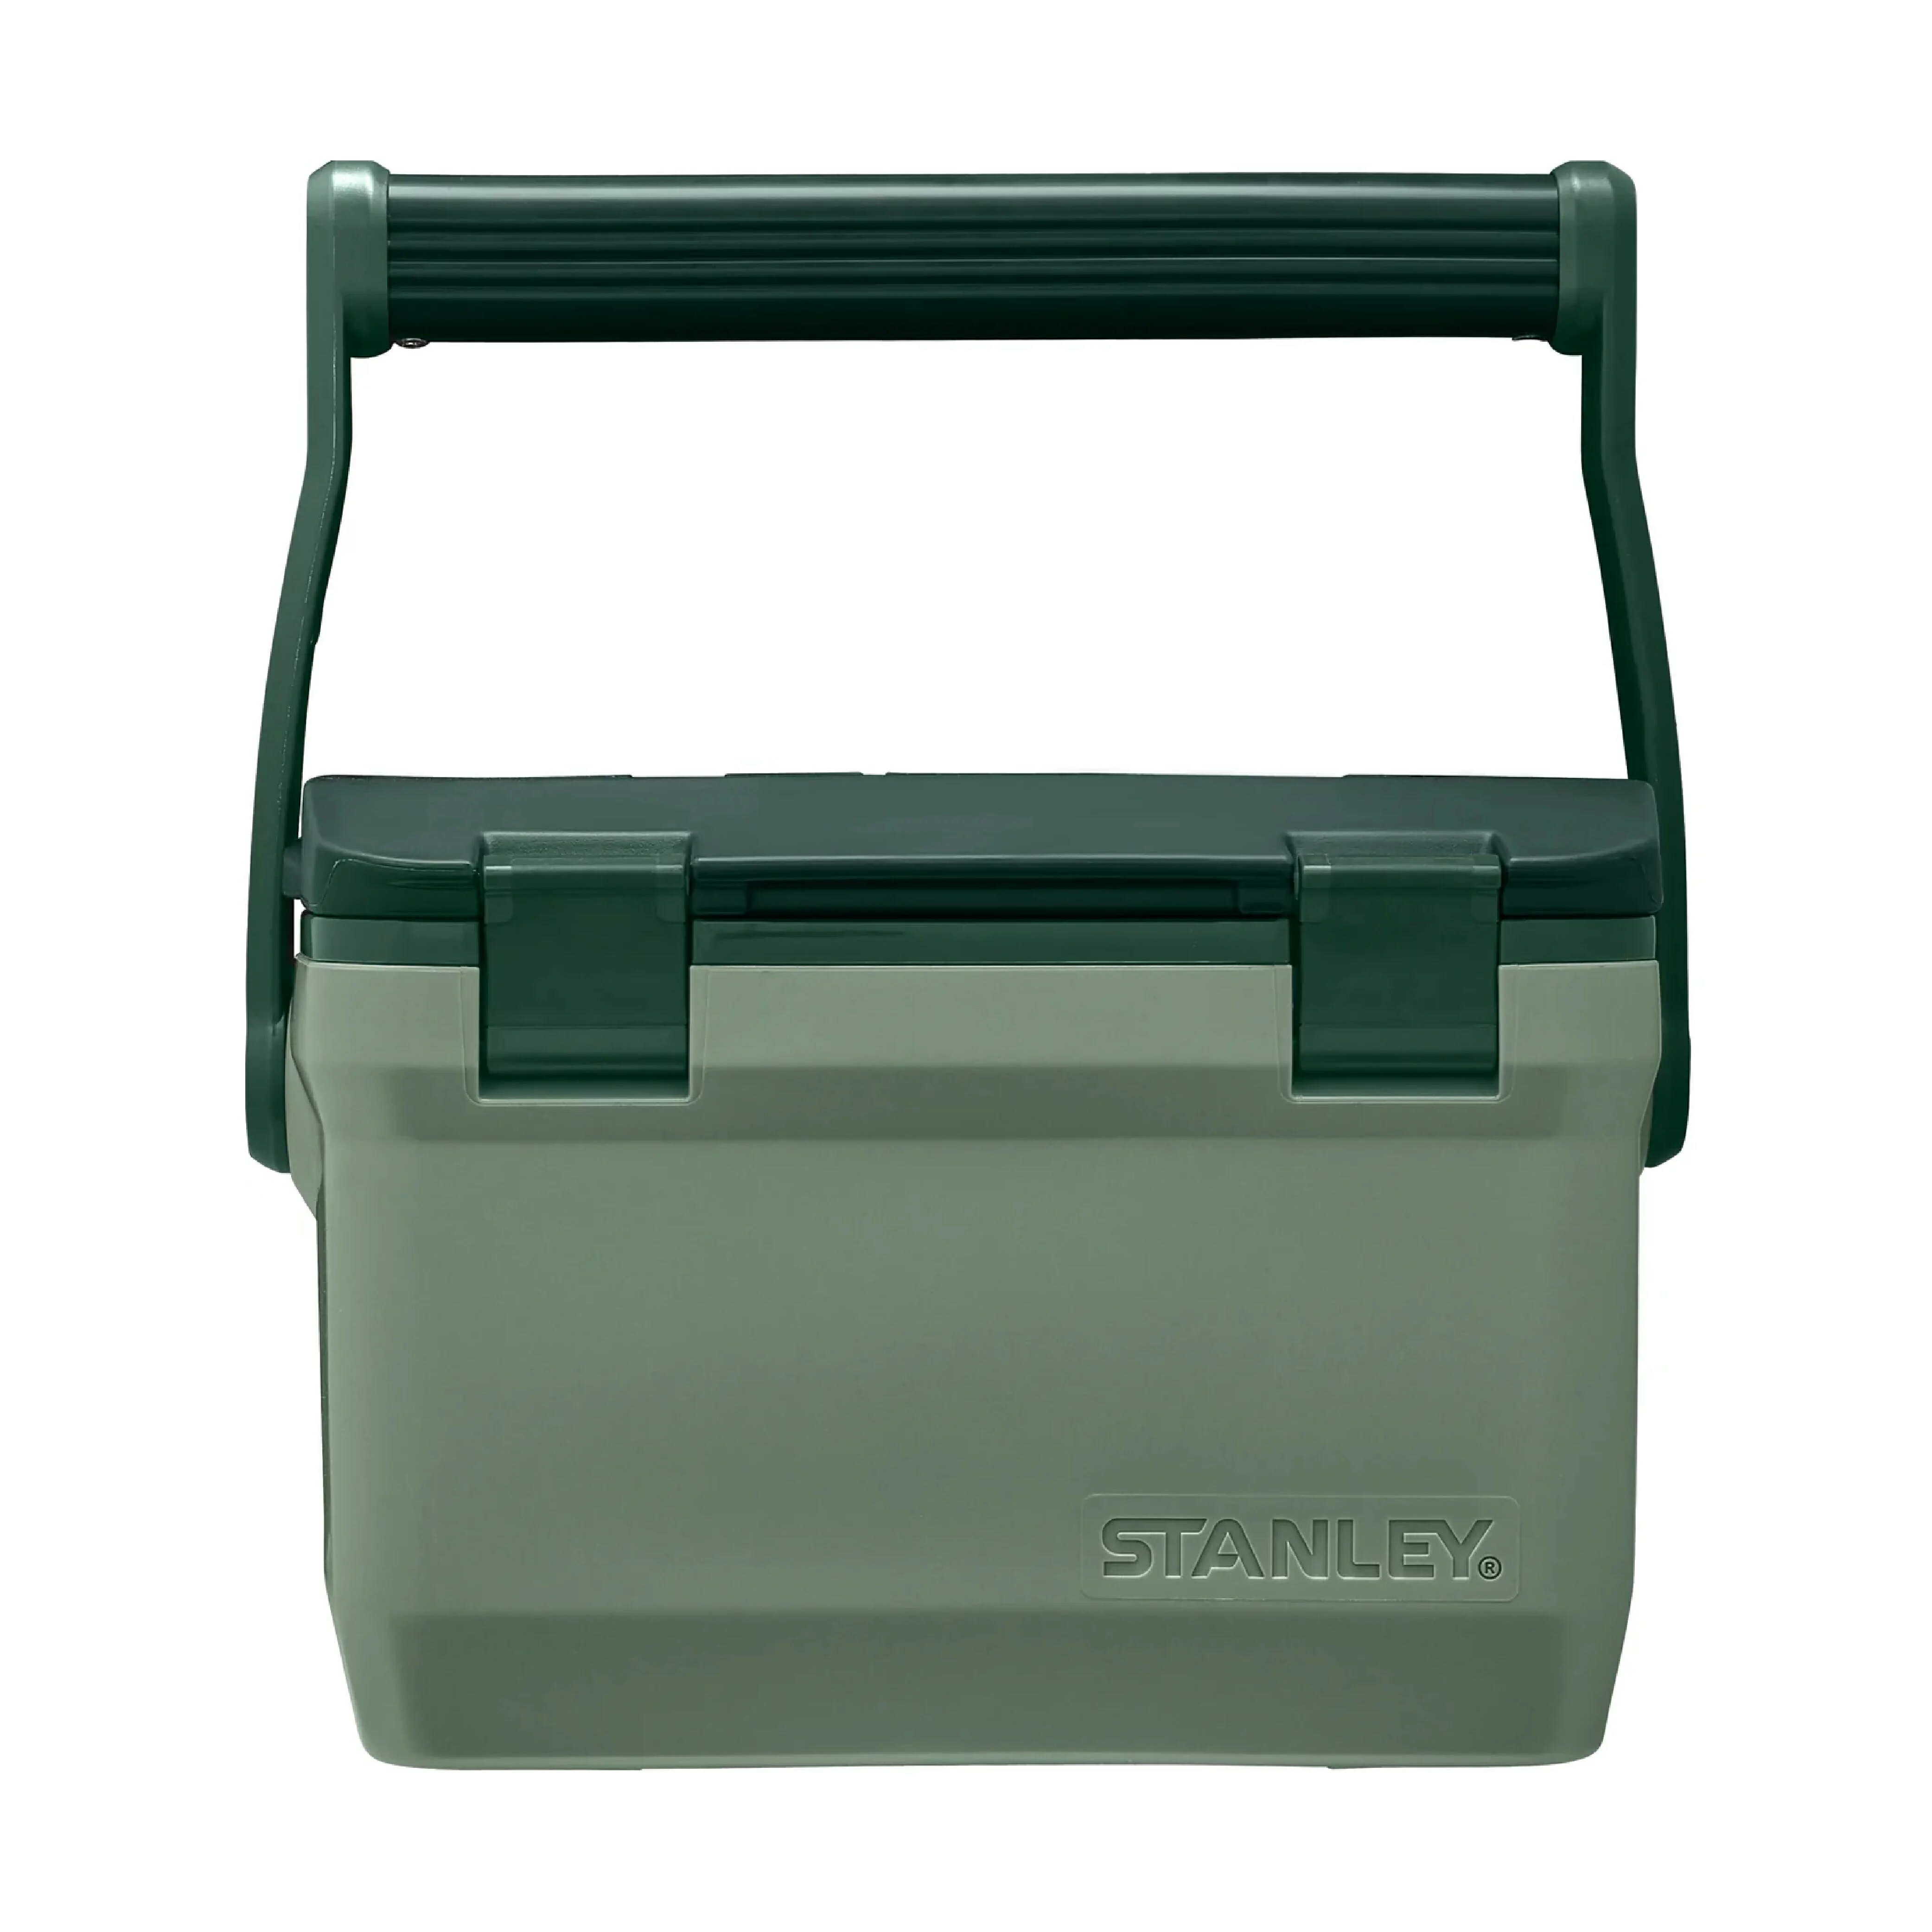 ├登山樂┤ 美國 Stanley STANLEY 冒險系列 Coolers戶外冰桶6.6L/綠 10-01622-085